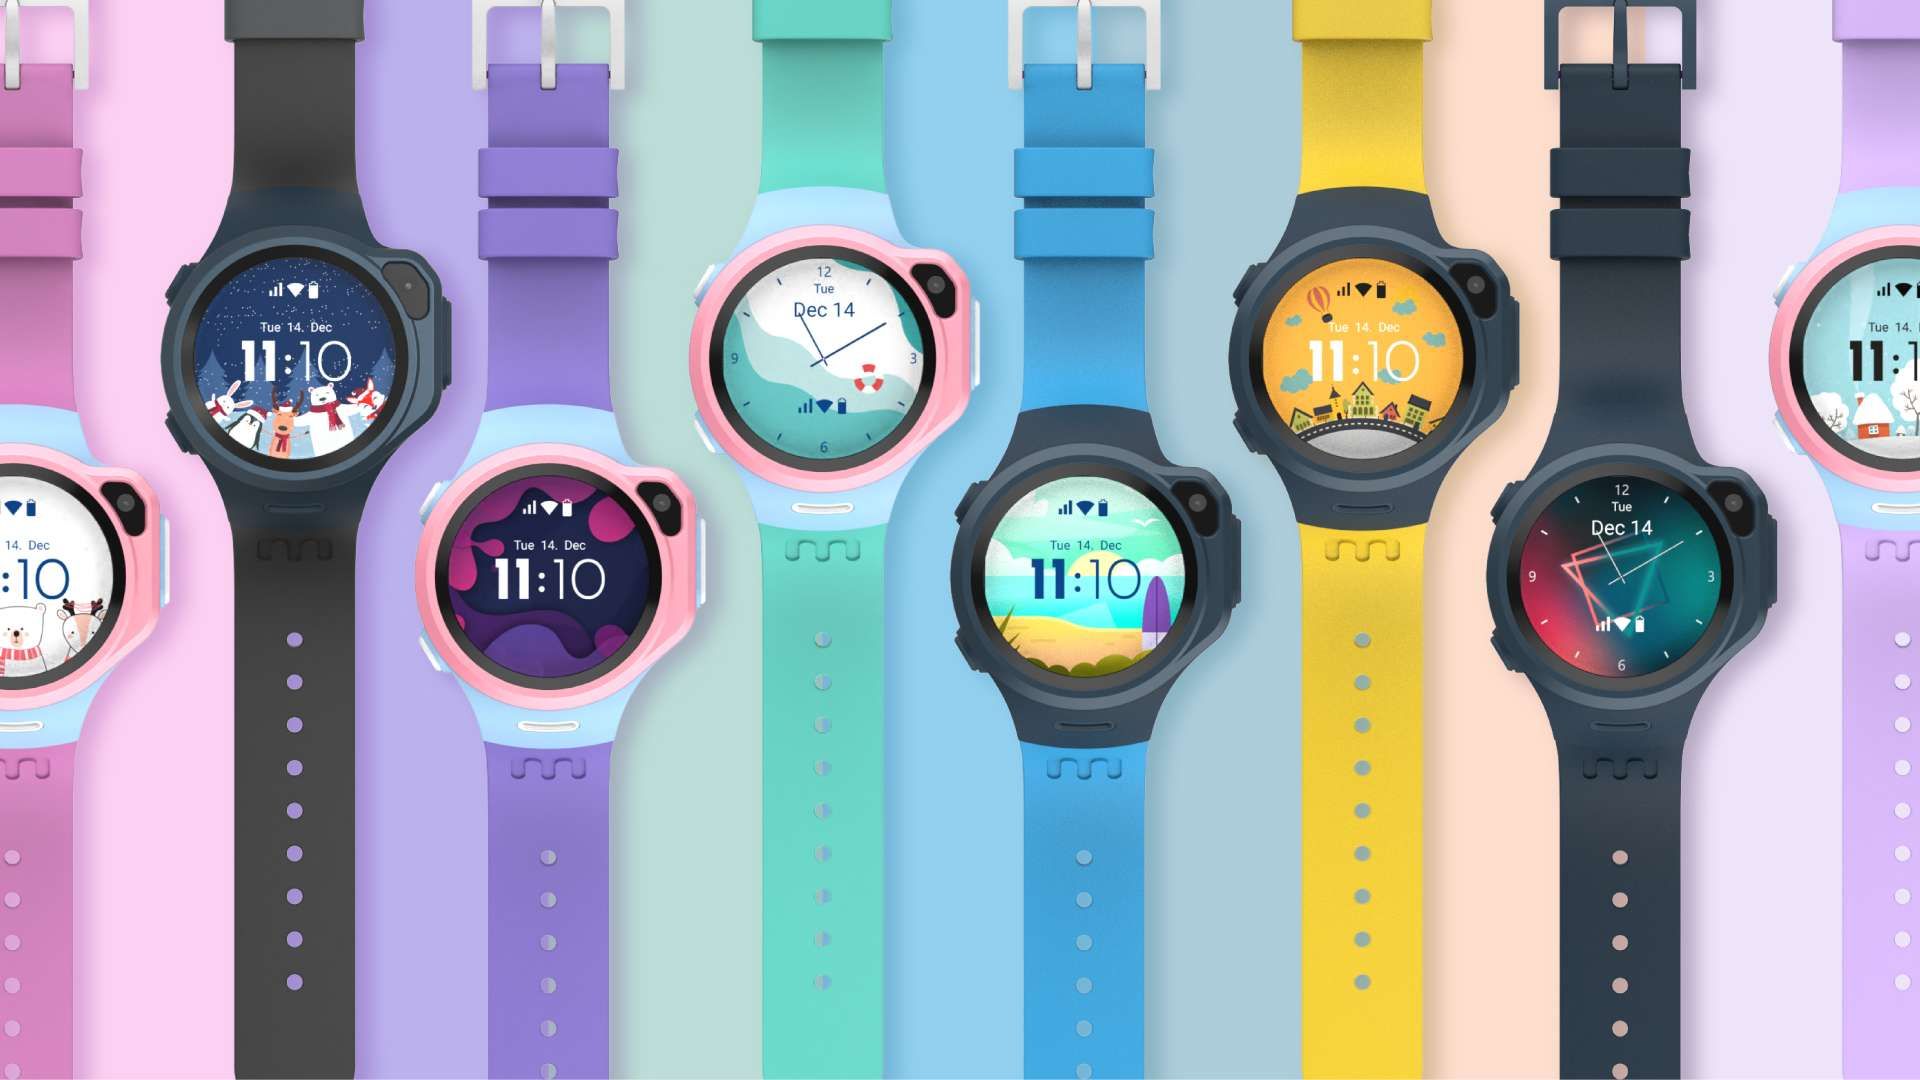 HD] Cách sử dụng đồng hồ thông minh Xiaomi, Apple, Samsung - Xwatch